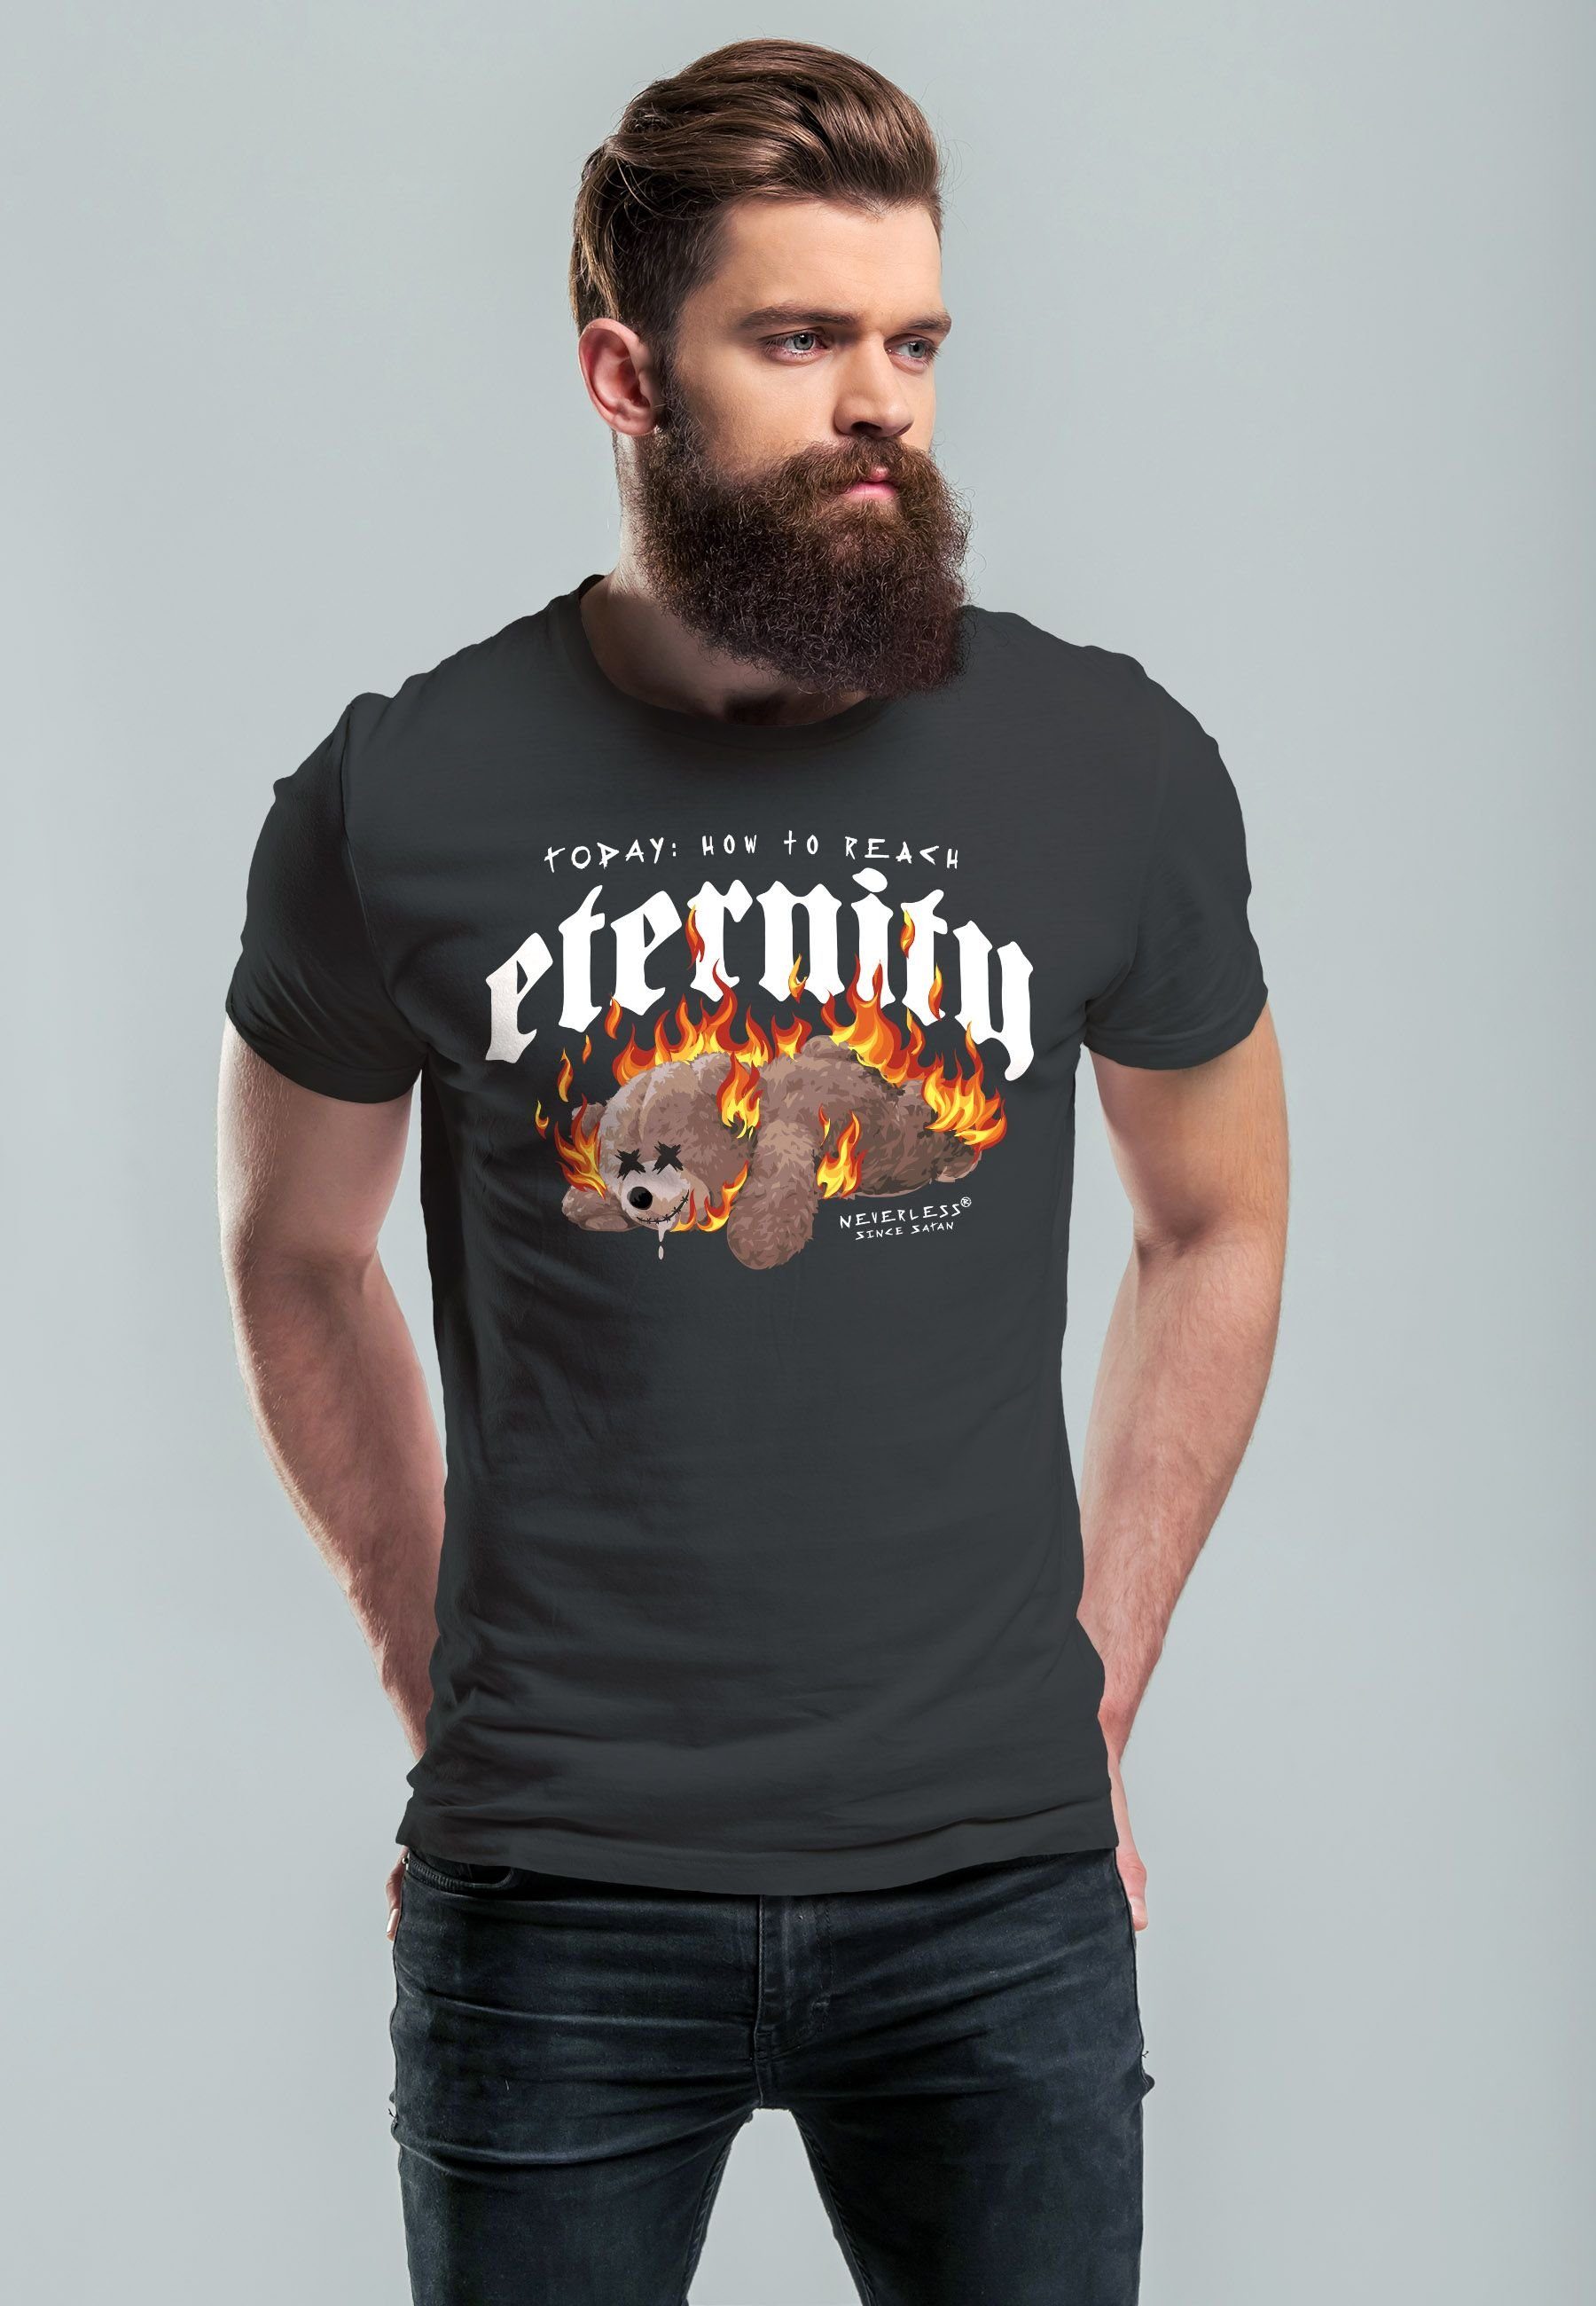 Bär Herren Sarkasmus mit Eternity Print-Shirt Fash Teddy Ironie T-Shirt Print Aufdruck Print Neverless anthrazit